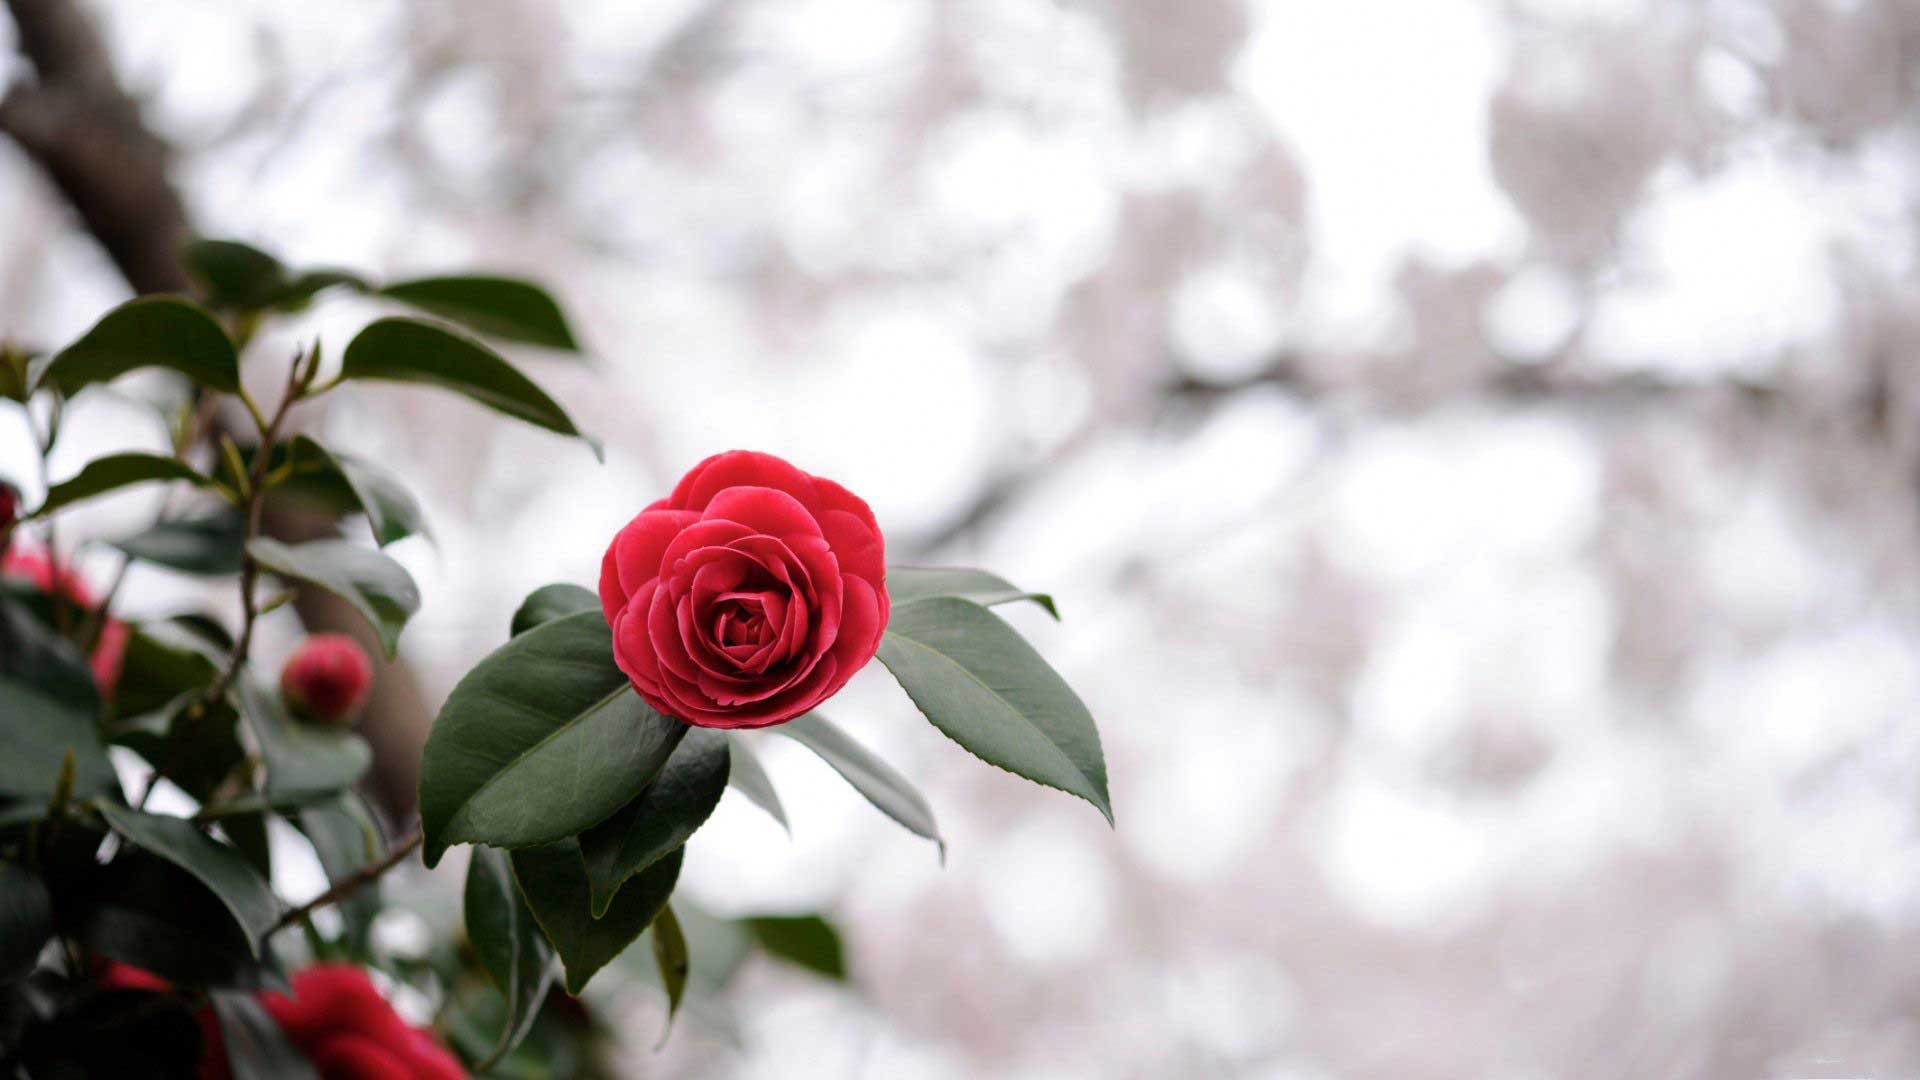 عکس گل رز قرمز با کیفیت عالی